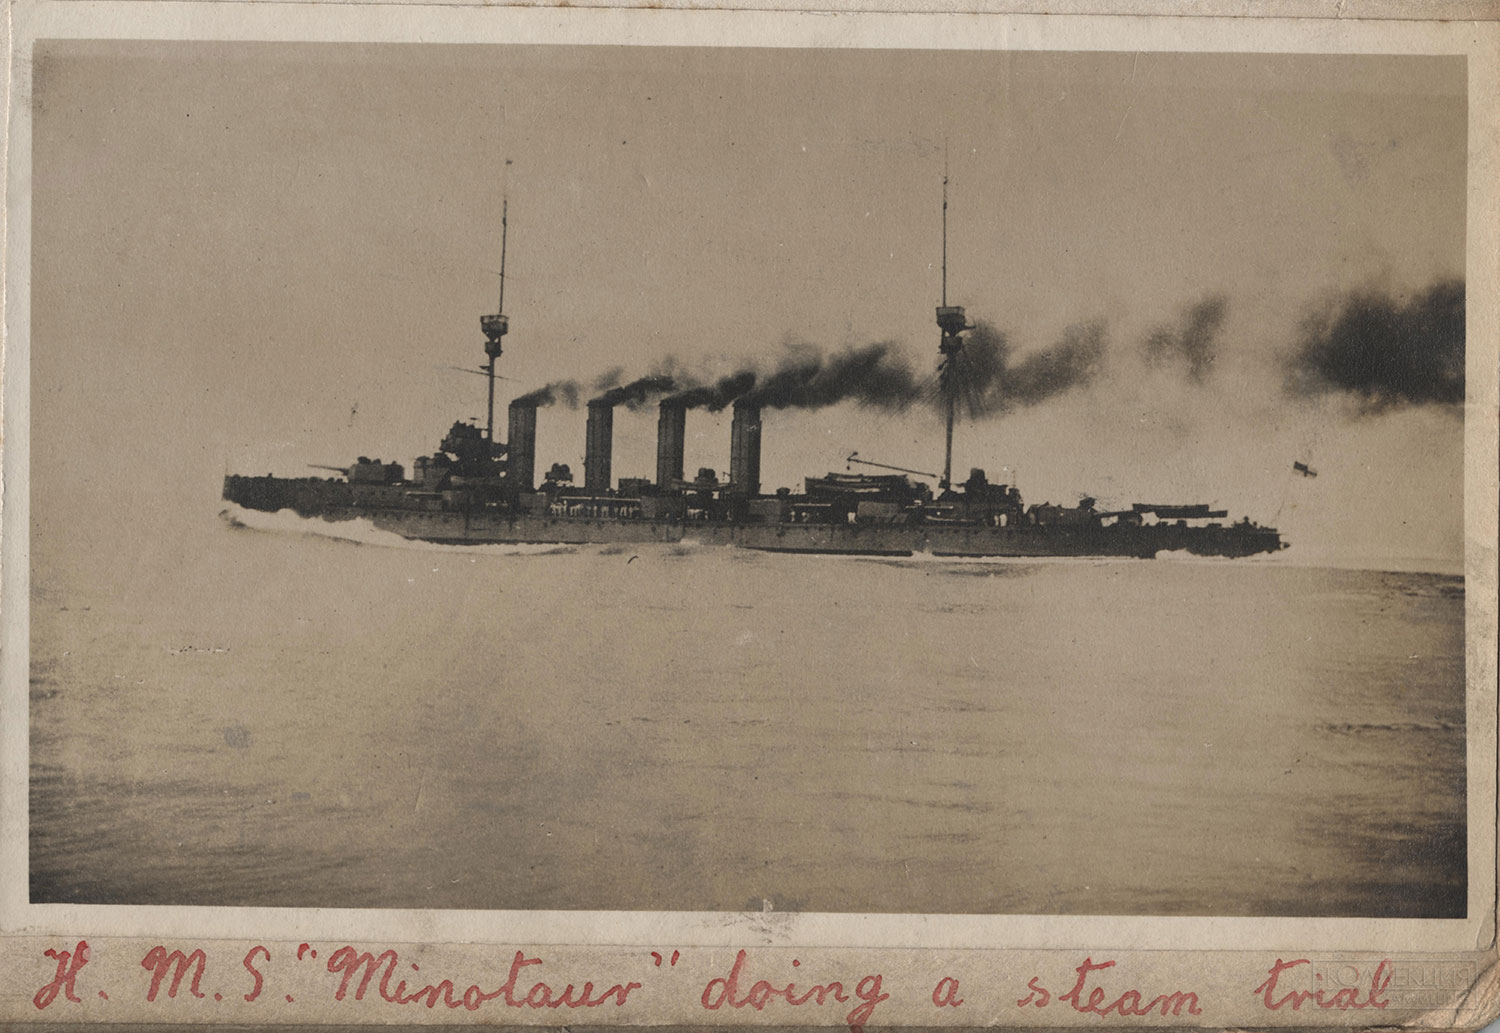 Броненосный крейсер «HMS Minotaur» на испытаниях машин. На фото видно, что крейсер прошел модернизацию и у него уже высокие дымовые трубы. Трубы были удлинены в 1909 году на 4,5 м для устранения задымления мостика